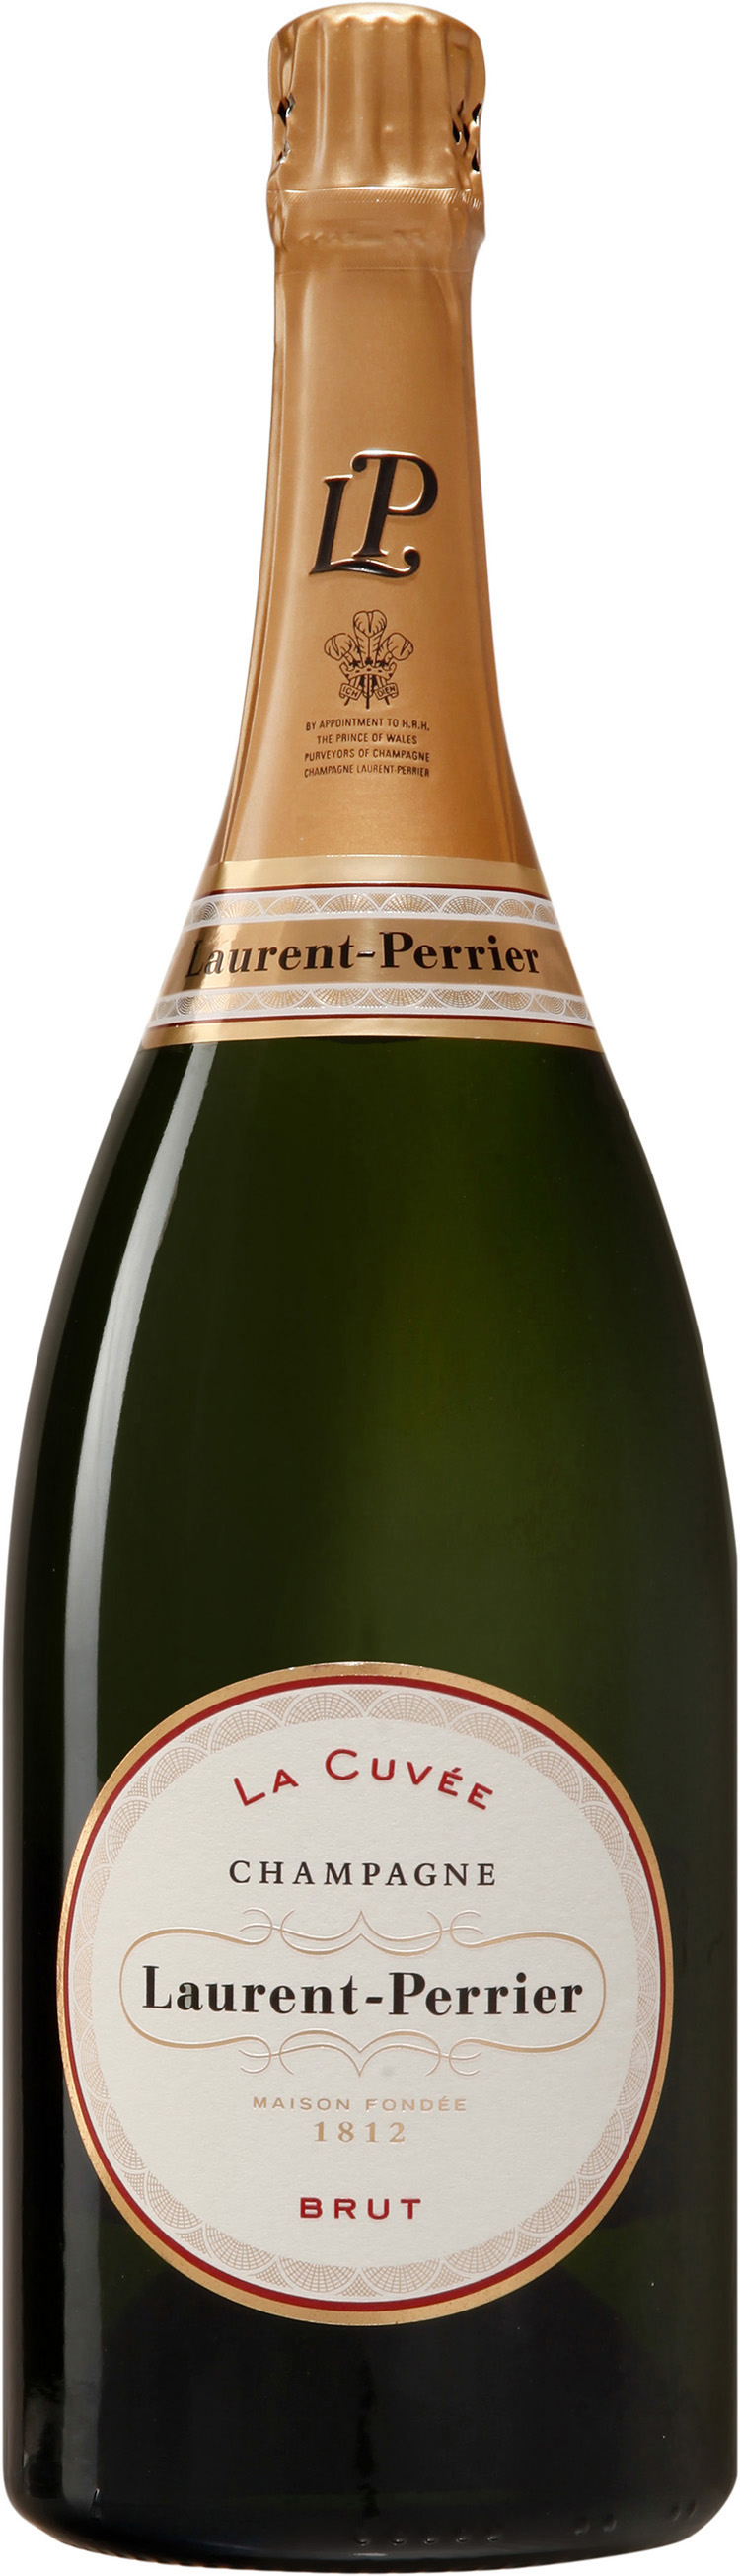 Champagne "Laurent-Perrier La Cuvée" blanc brut AOC